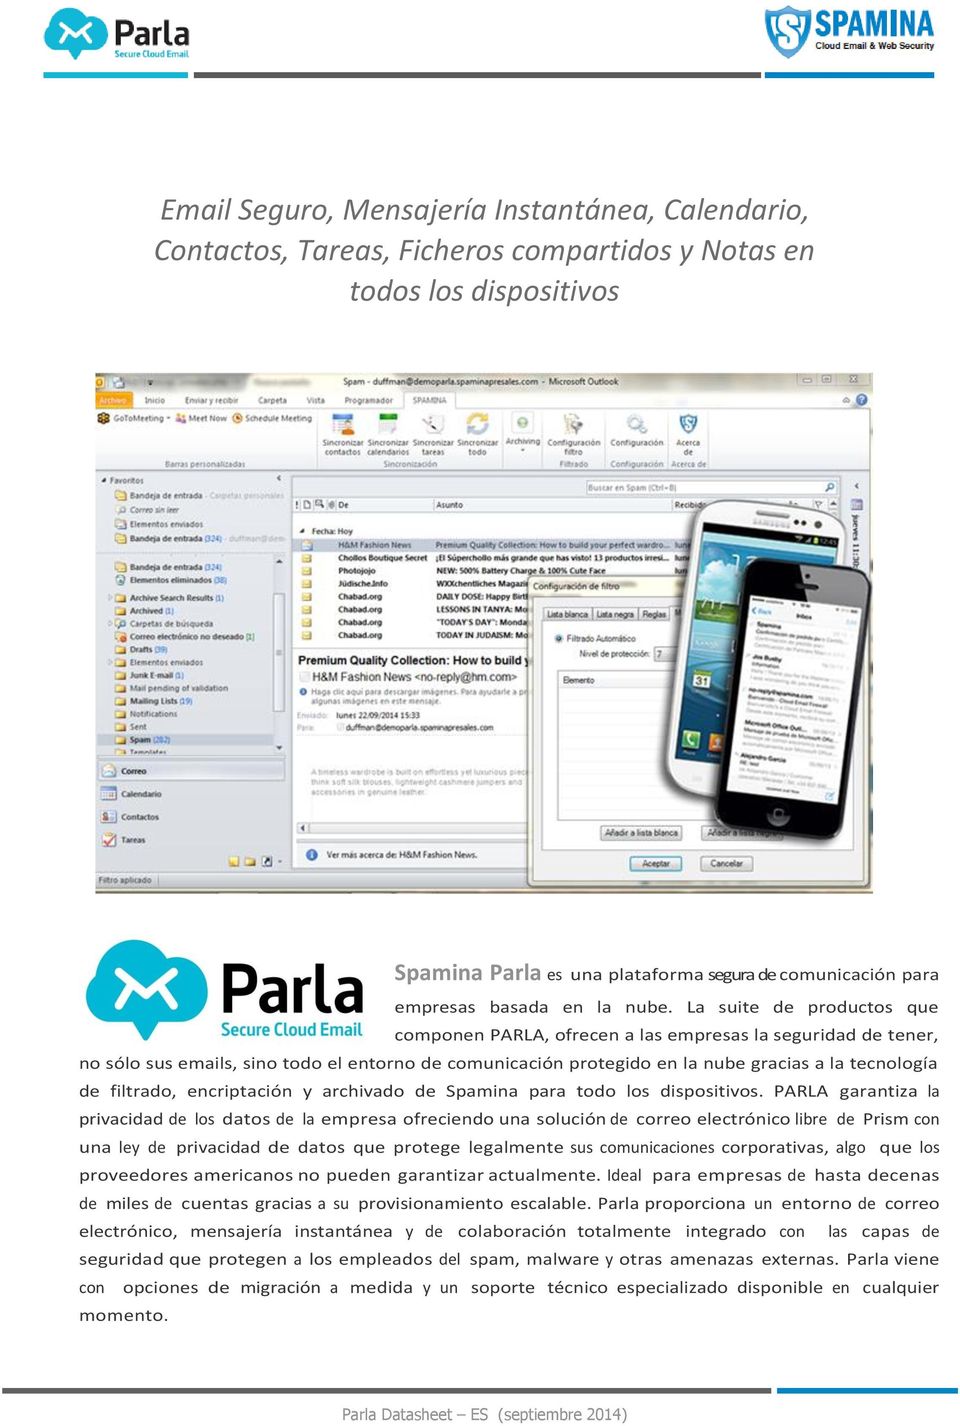 La suite de productos que componen PARLA, ofrecen a las empresas la seguridad de tener, no sólo sus emails, sino todo el entorno de comunicación protegido en la nube gracias a la tecnología de